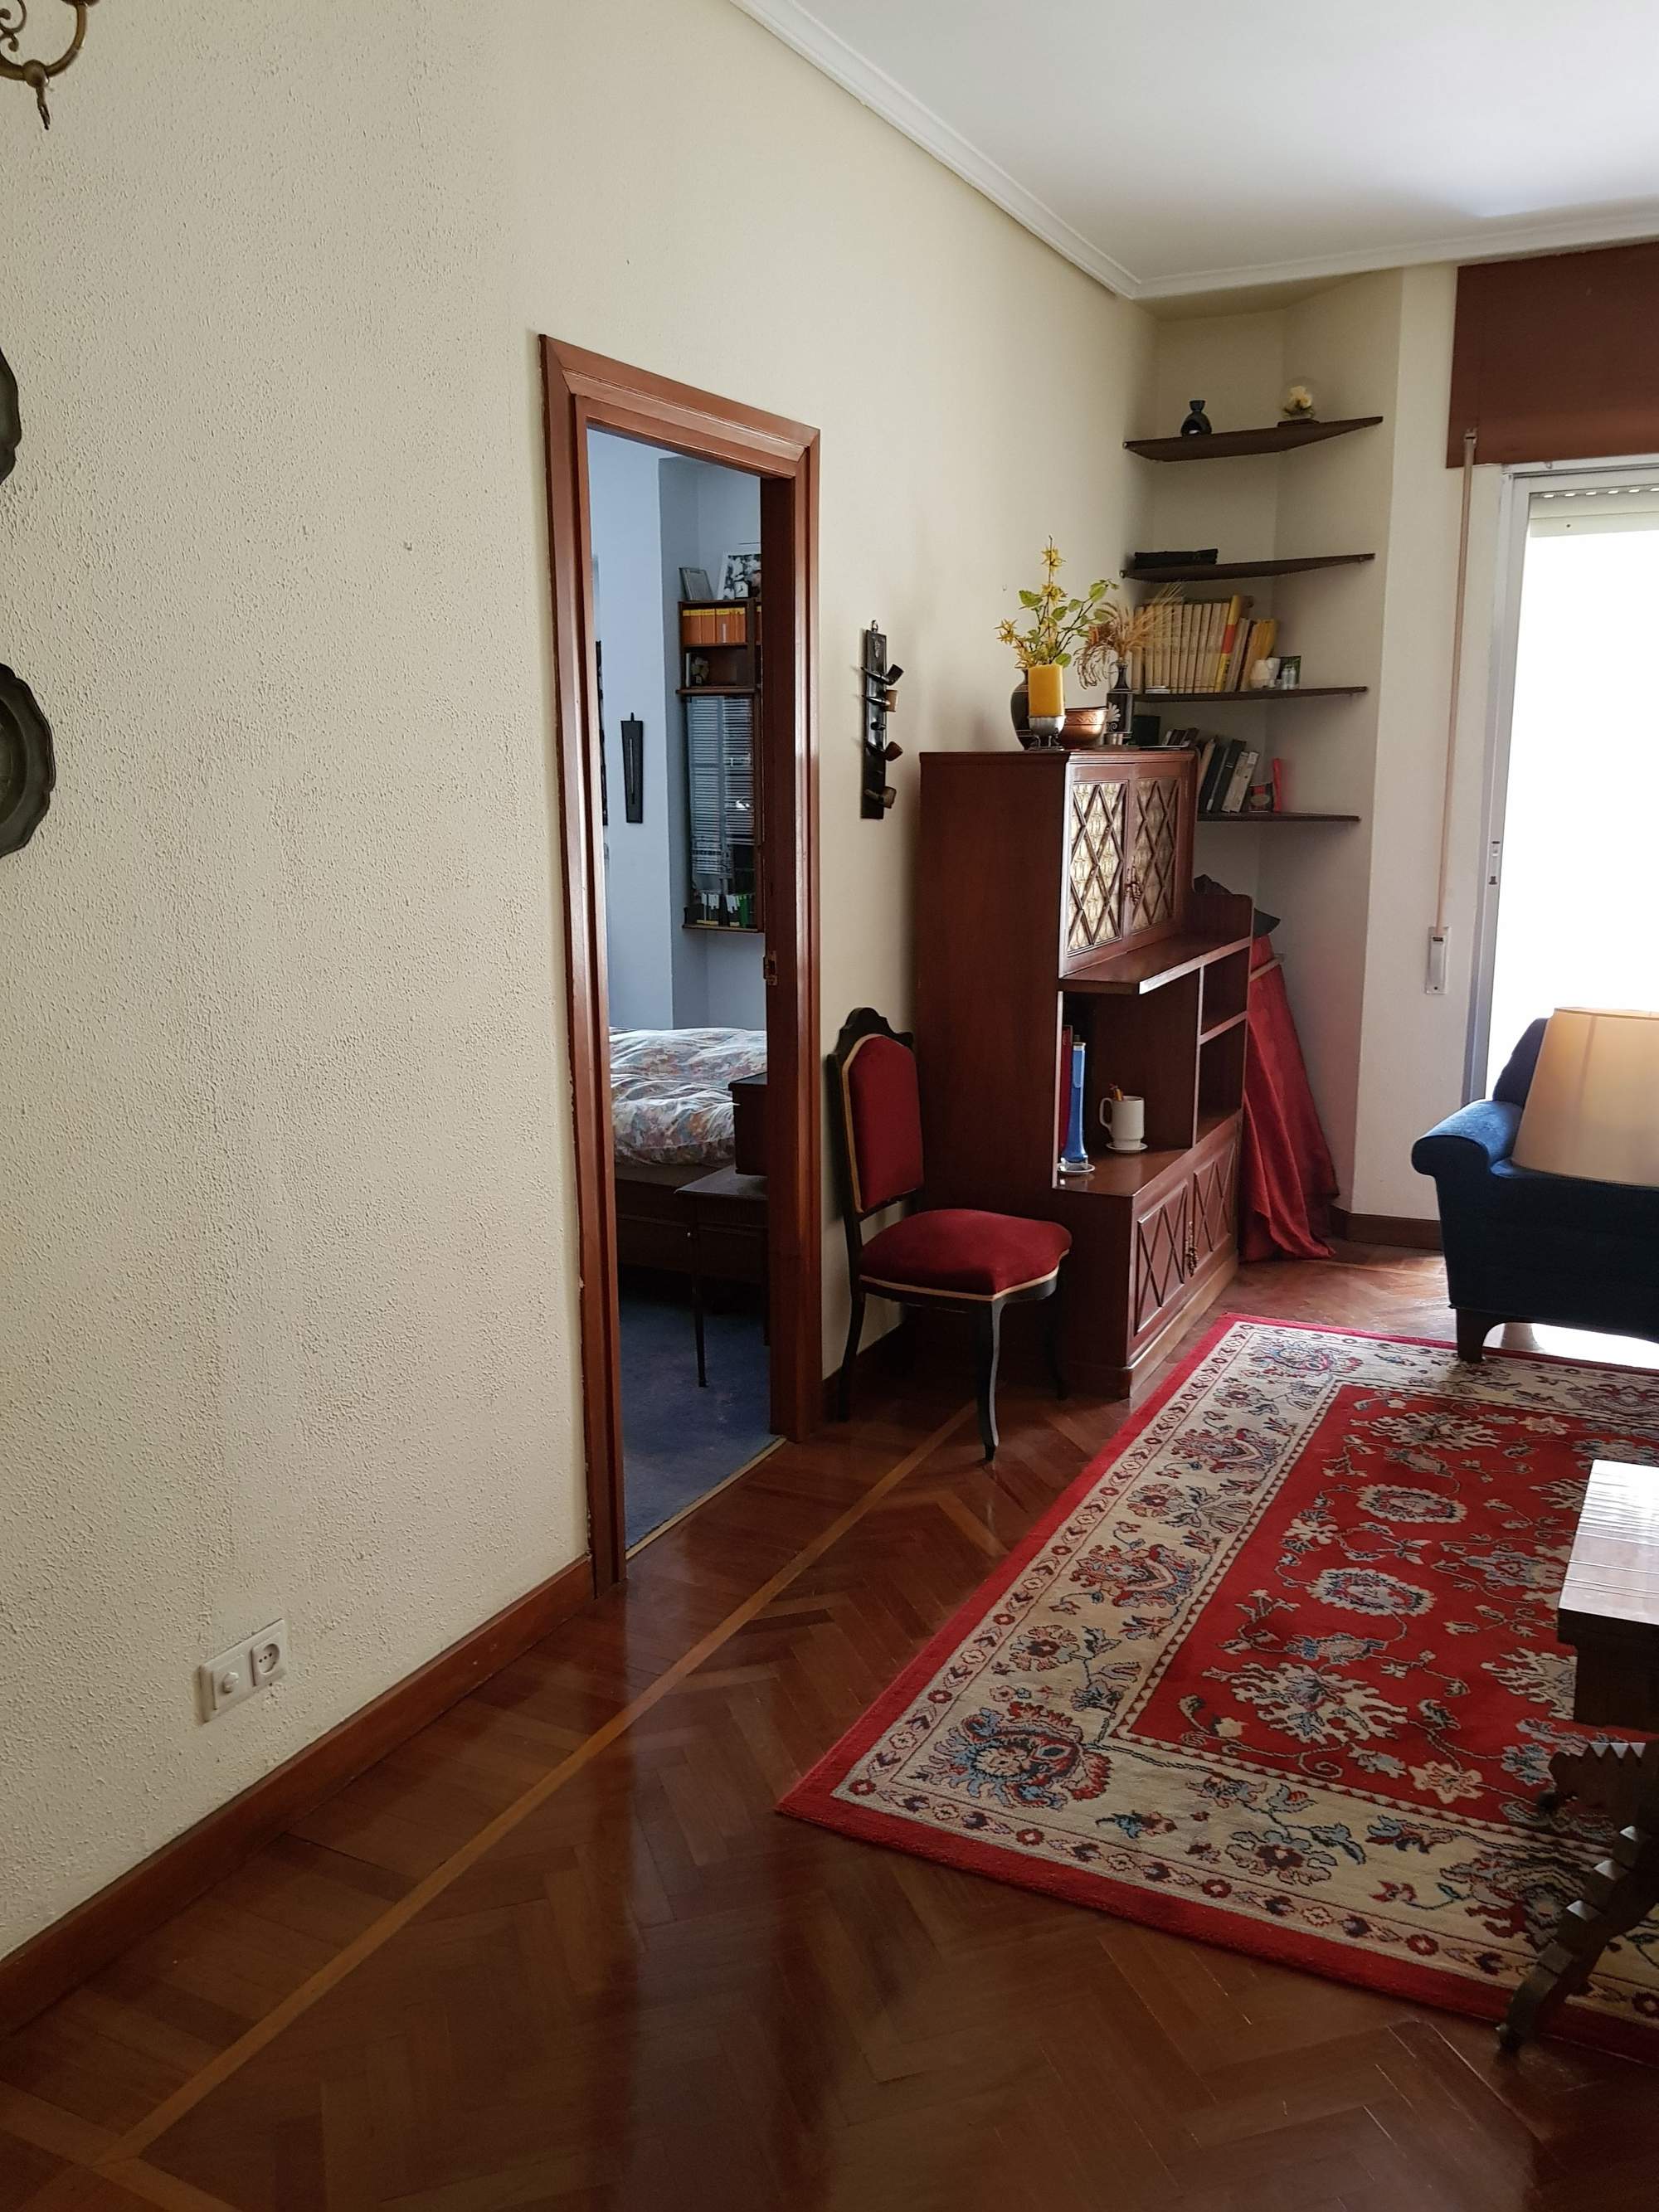 Un salón viejo en una casa de Bilbao.